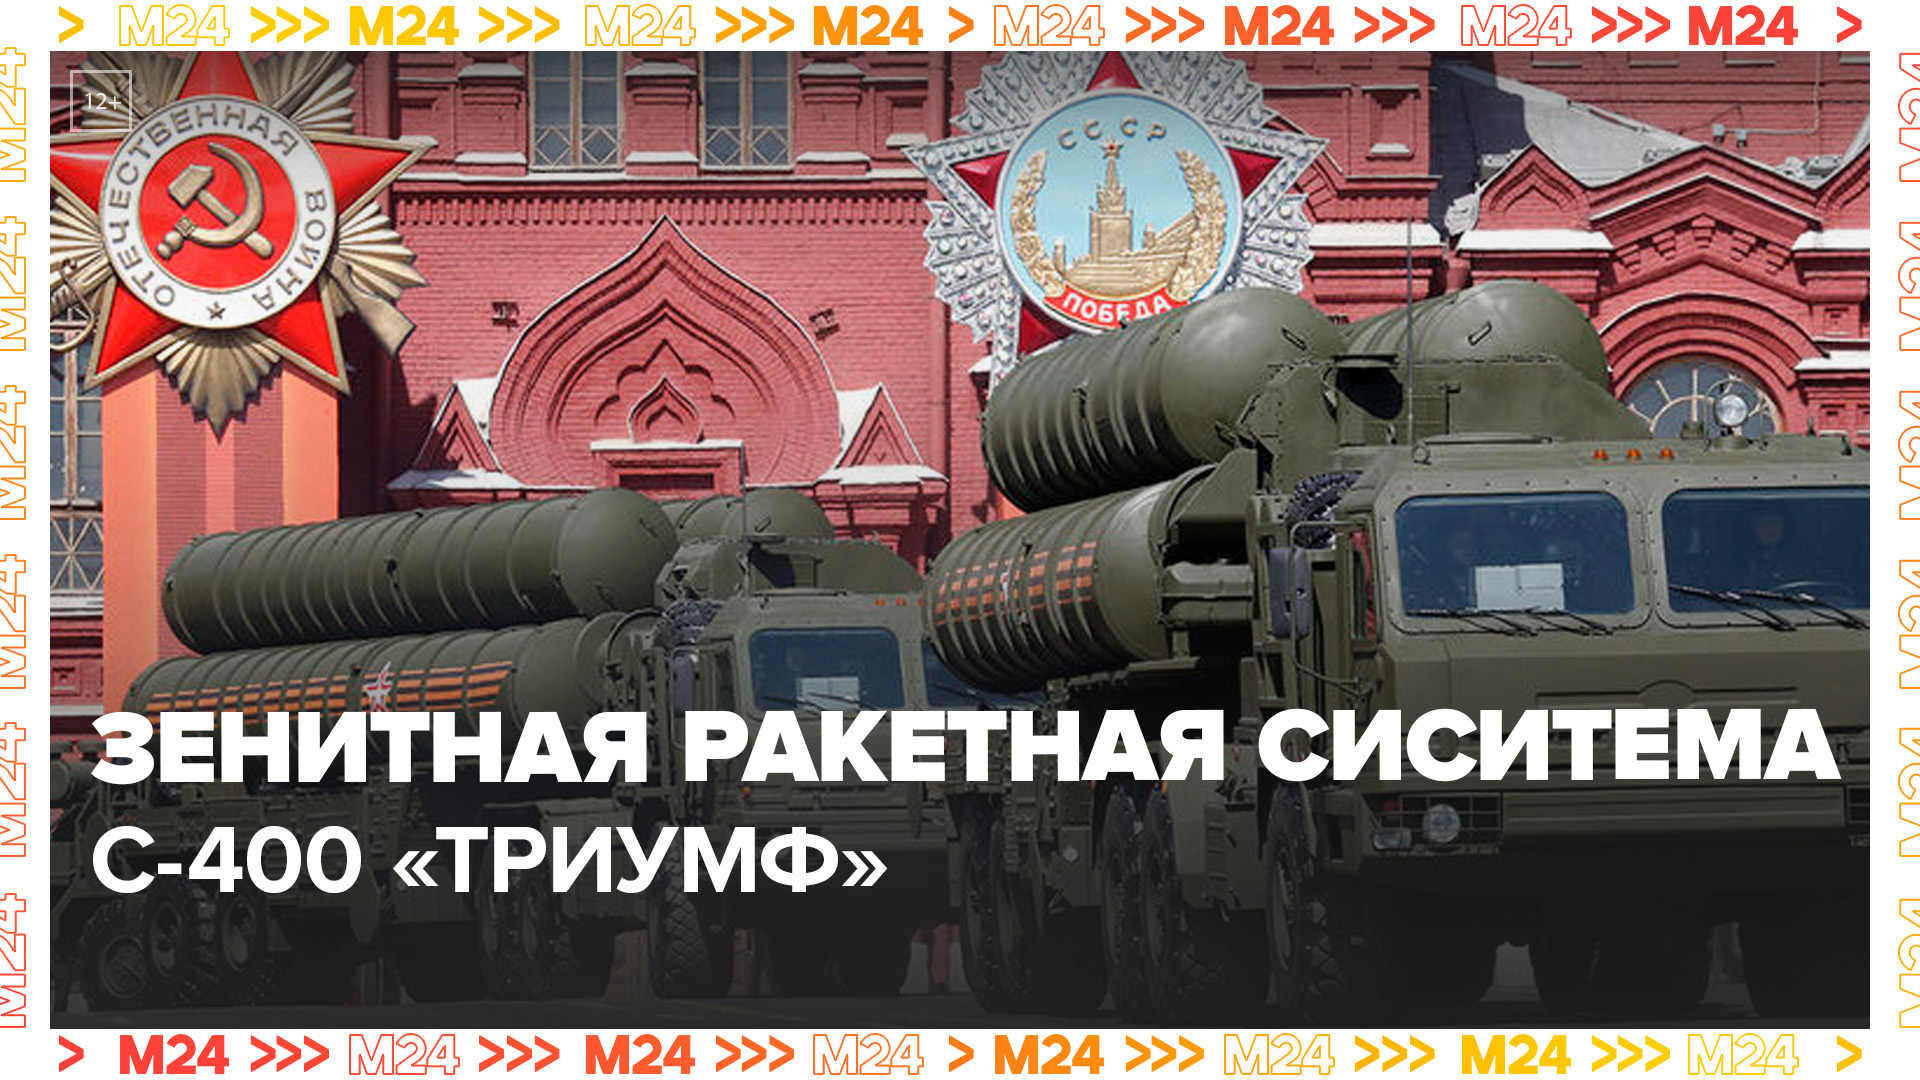 На Параде Победы показали С-400 «ТРИУМФ»